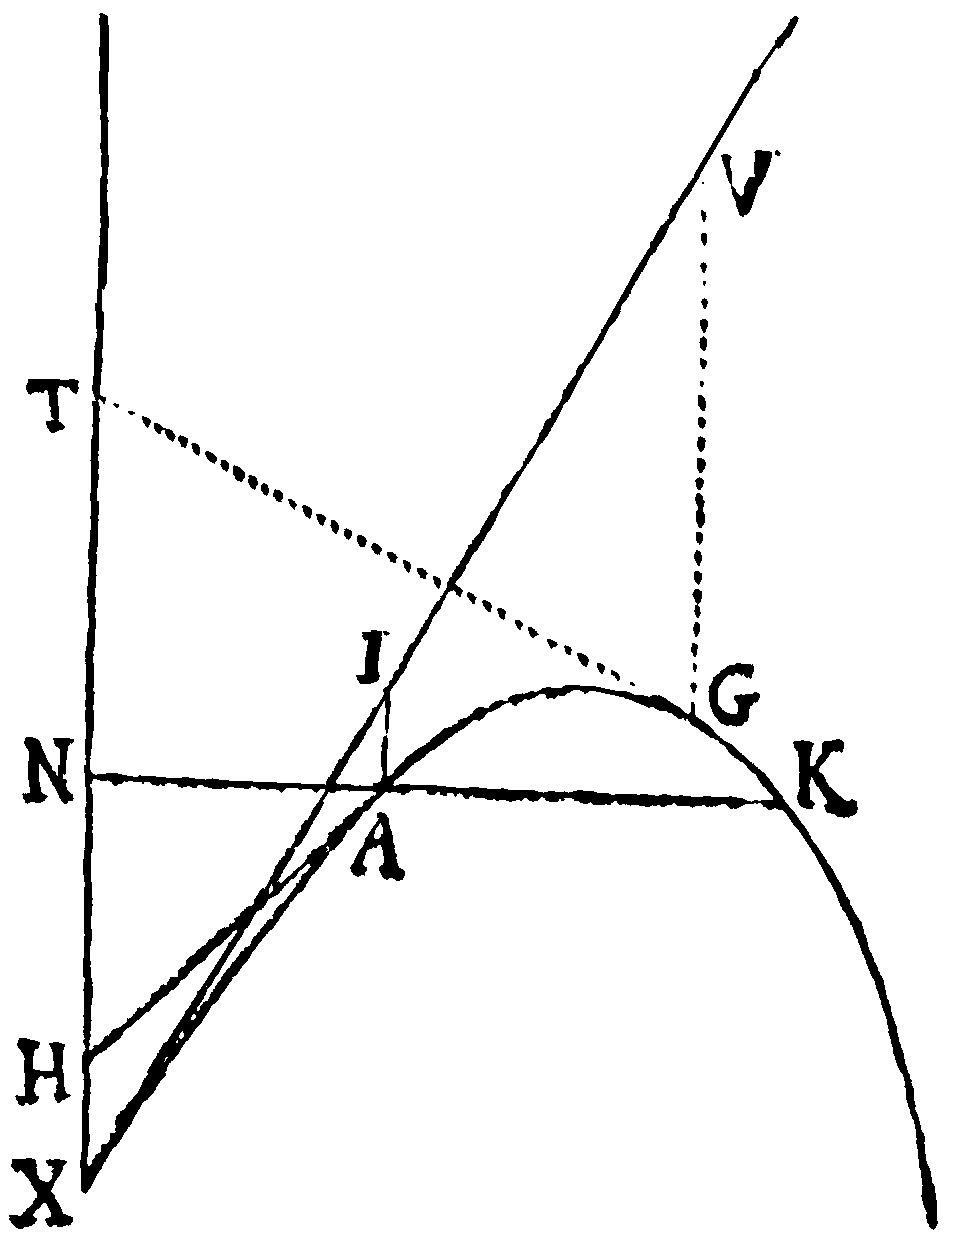 Figure for Reg. 8.